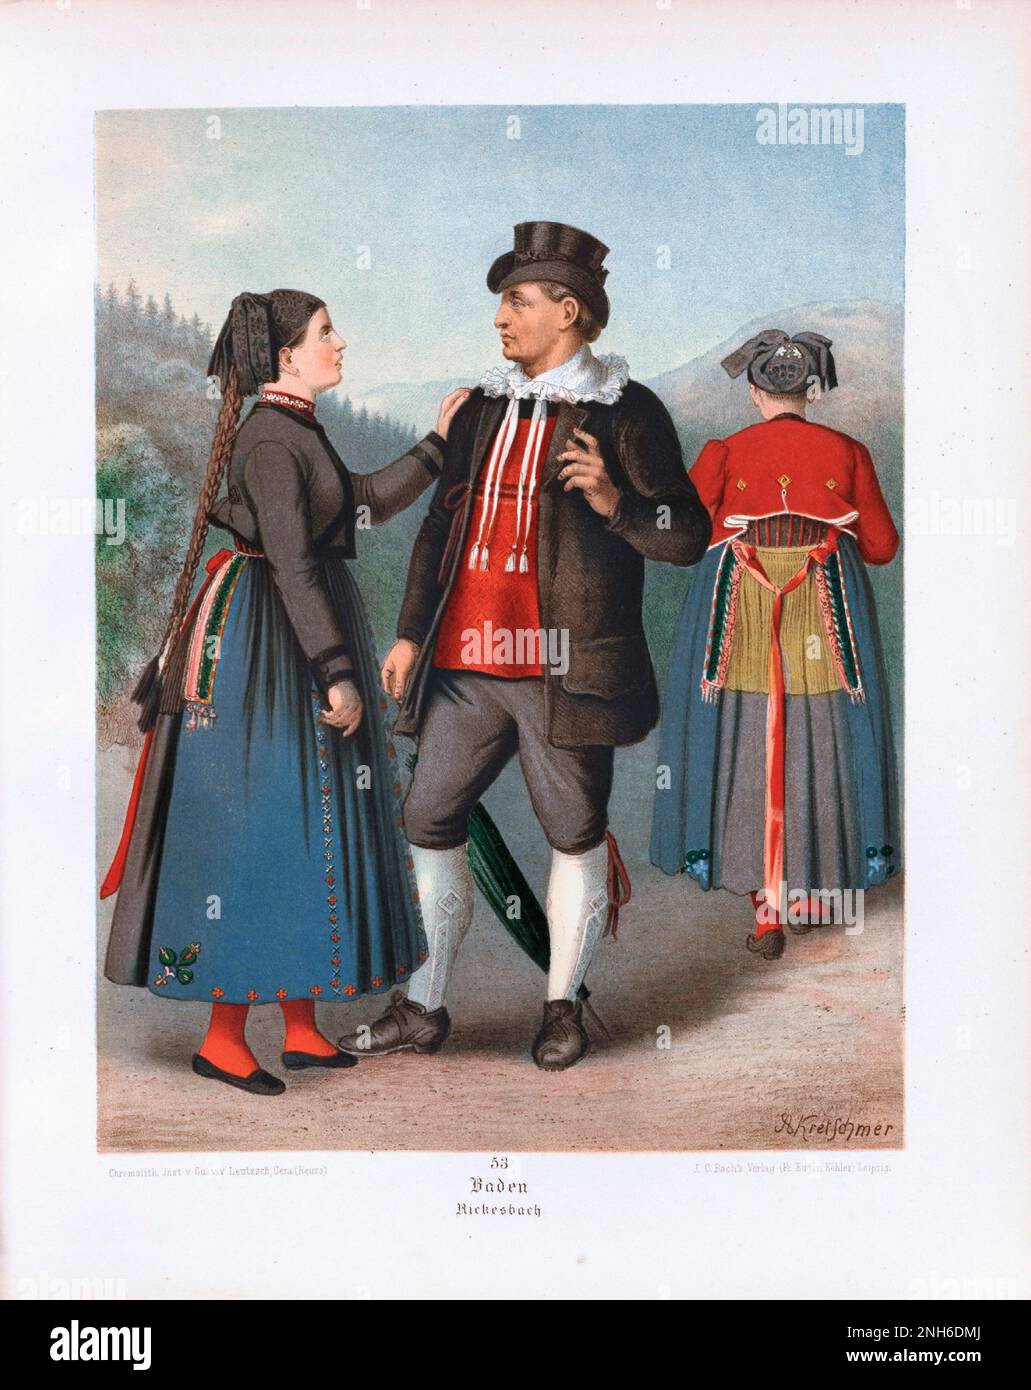 Disfraz folclórico alemán. Baden, Rickesbach. litografía del siglo 19th. Foto de stock